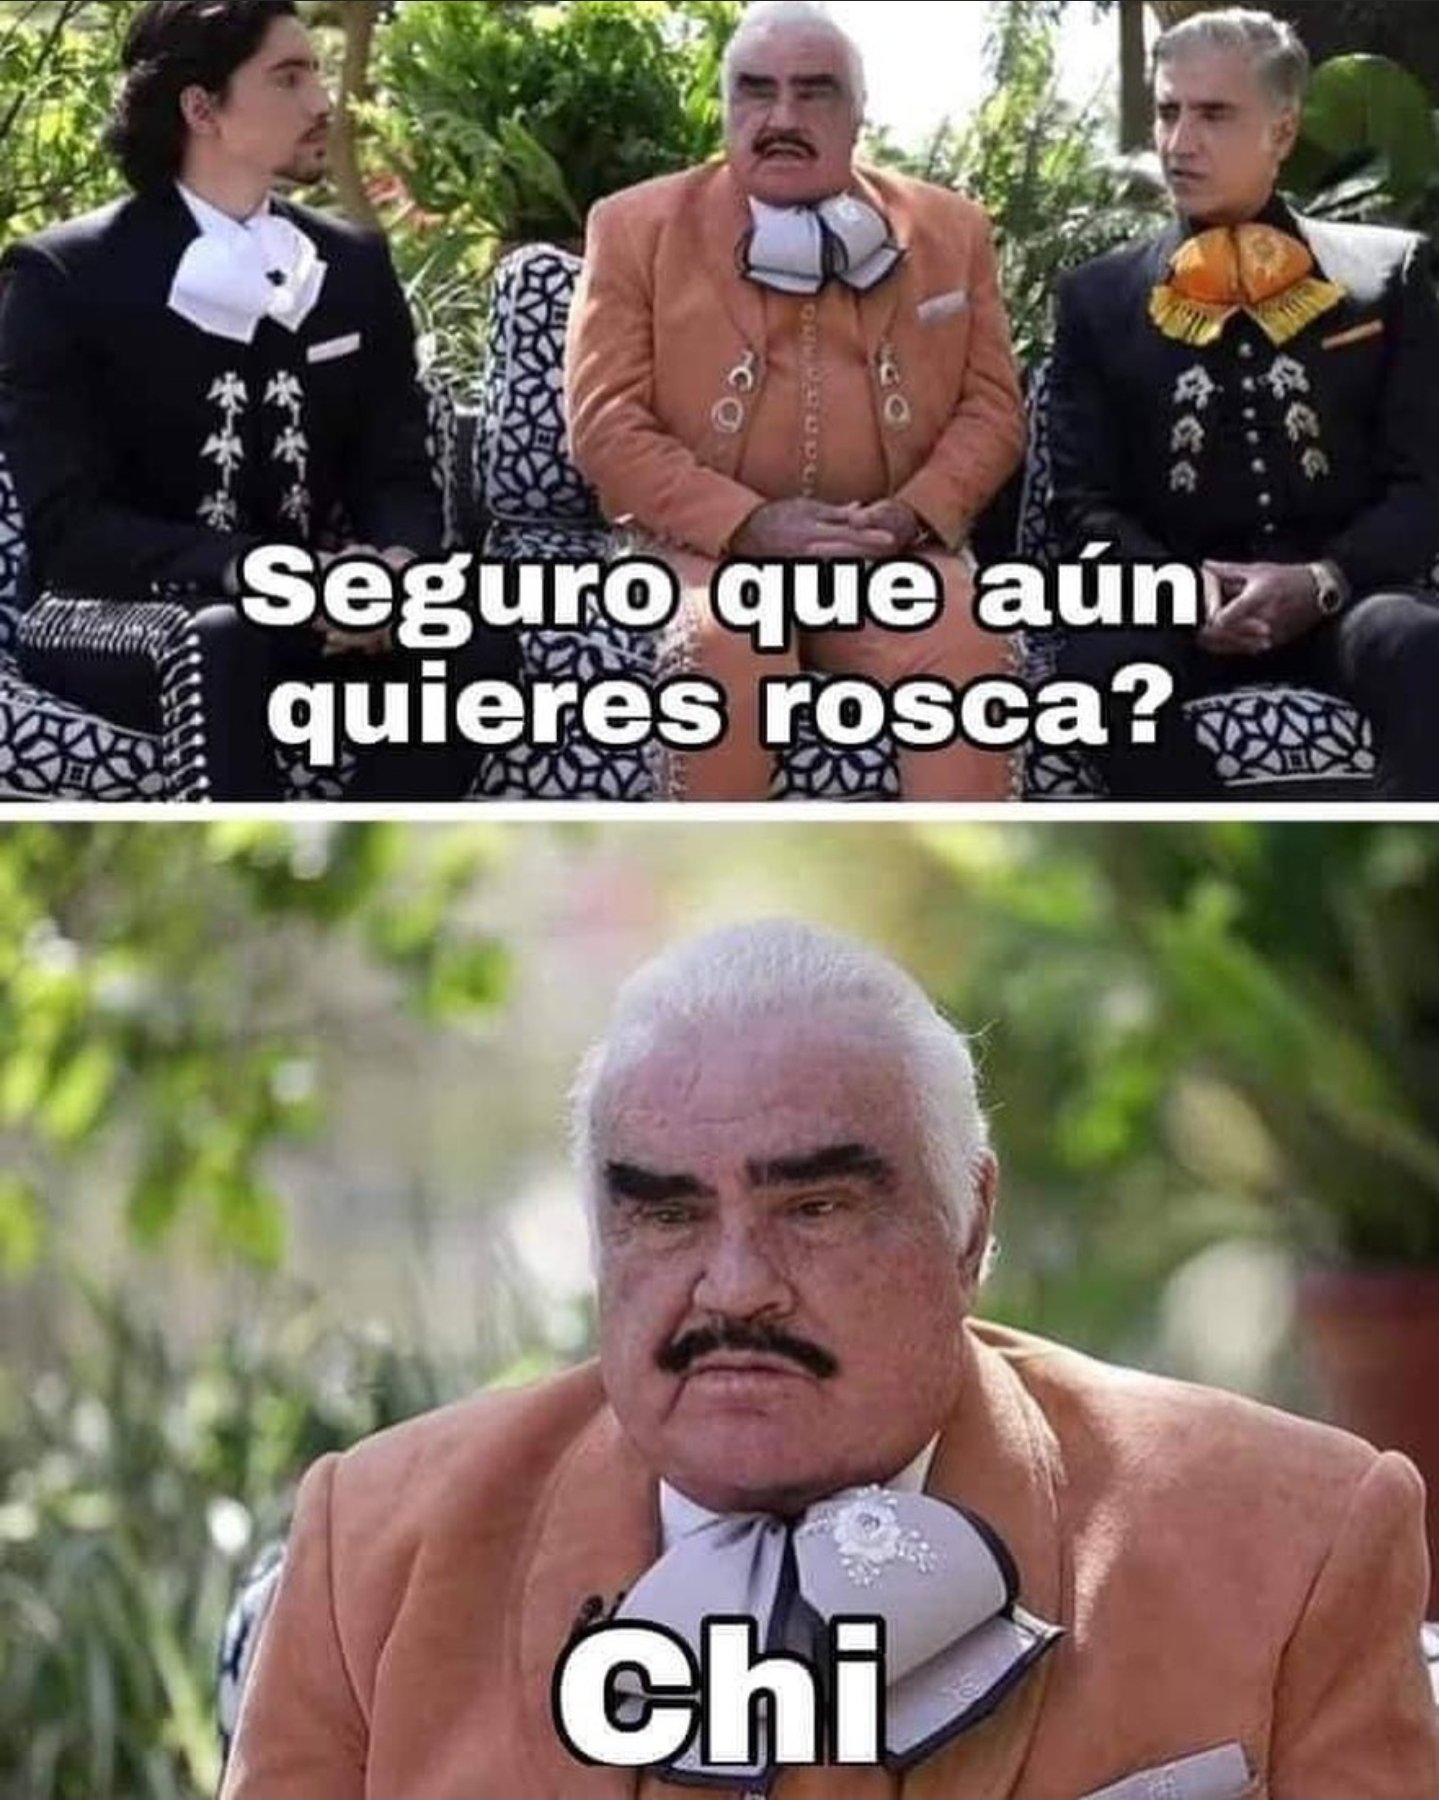 Vicente Fernández y su moño apretado generan divertidos memes